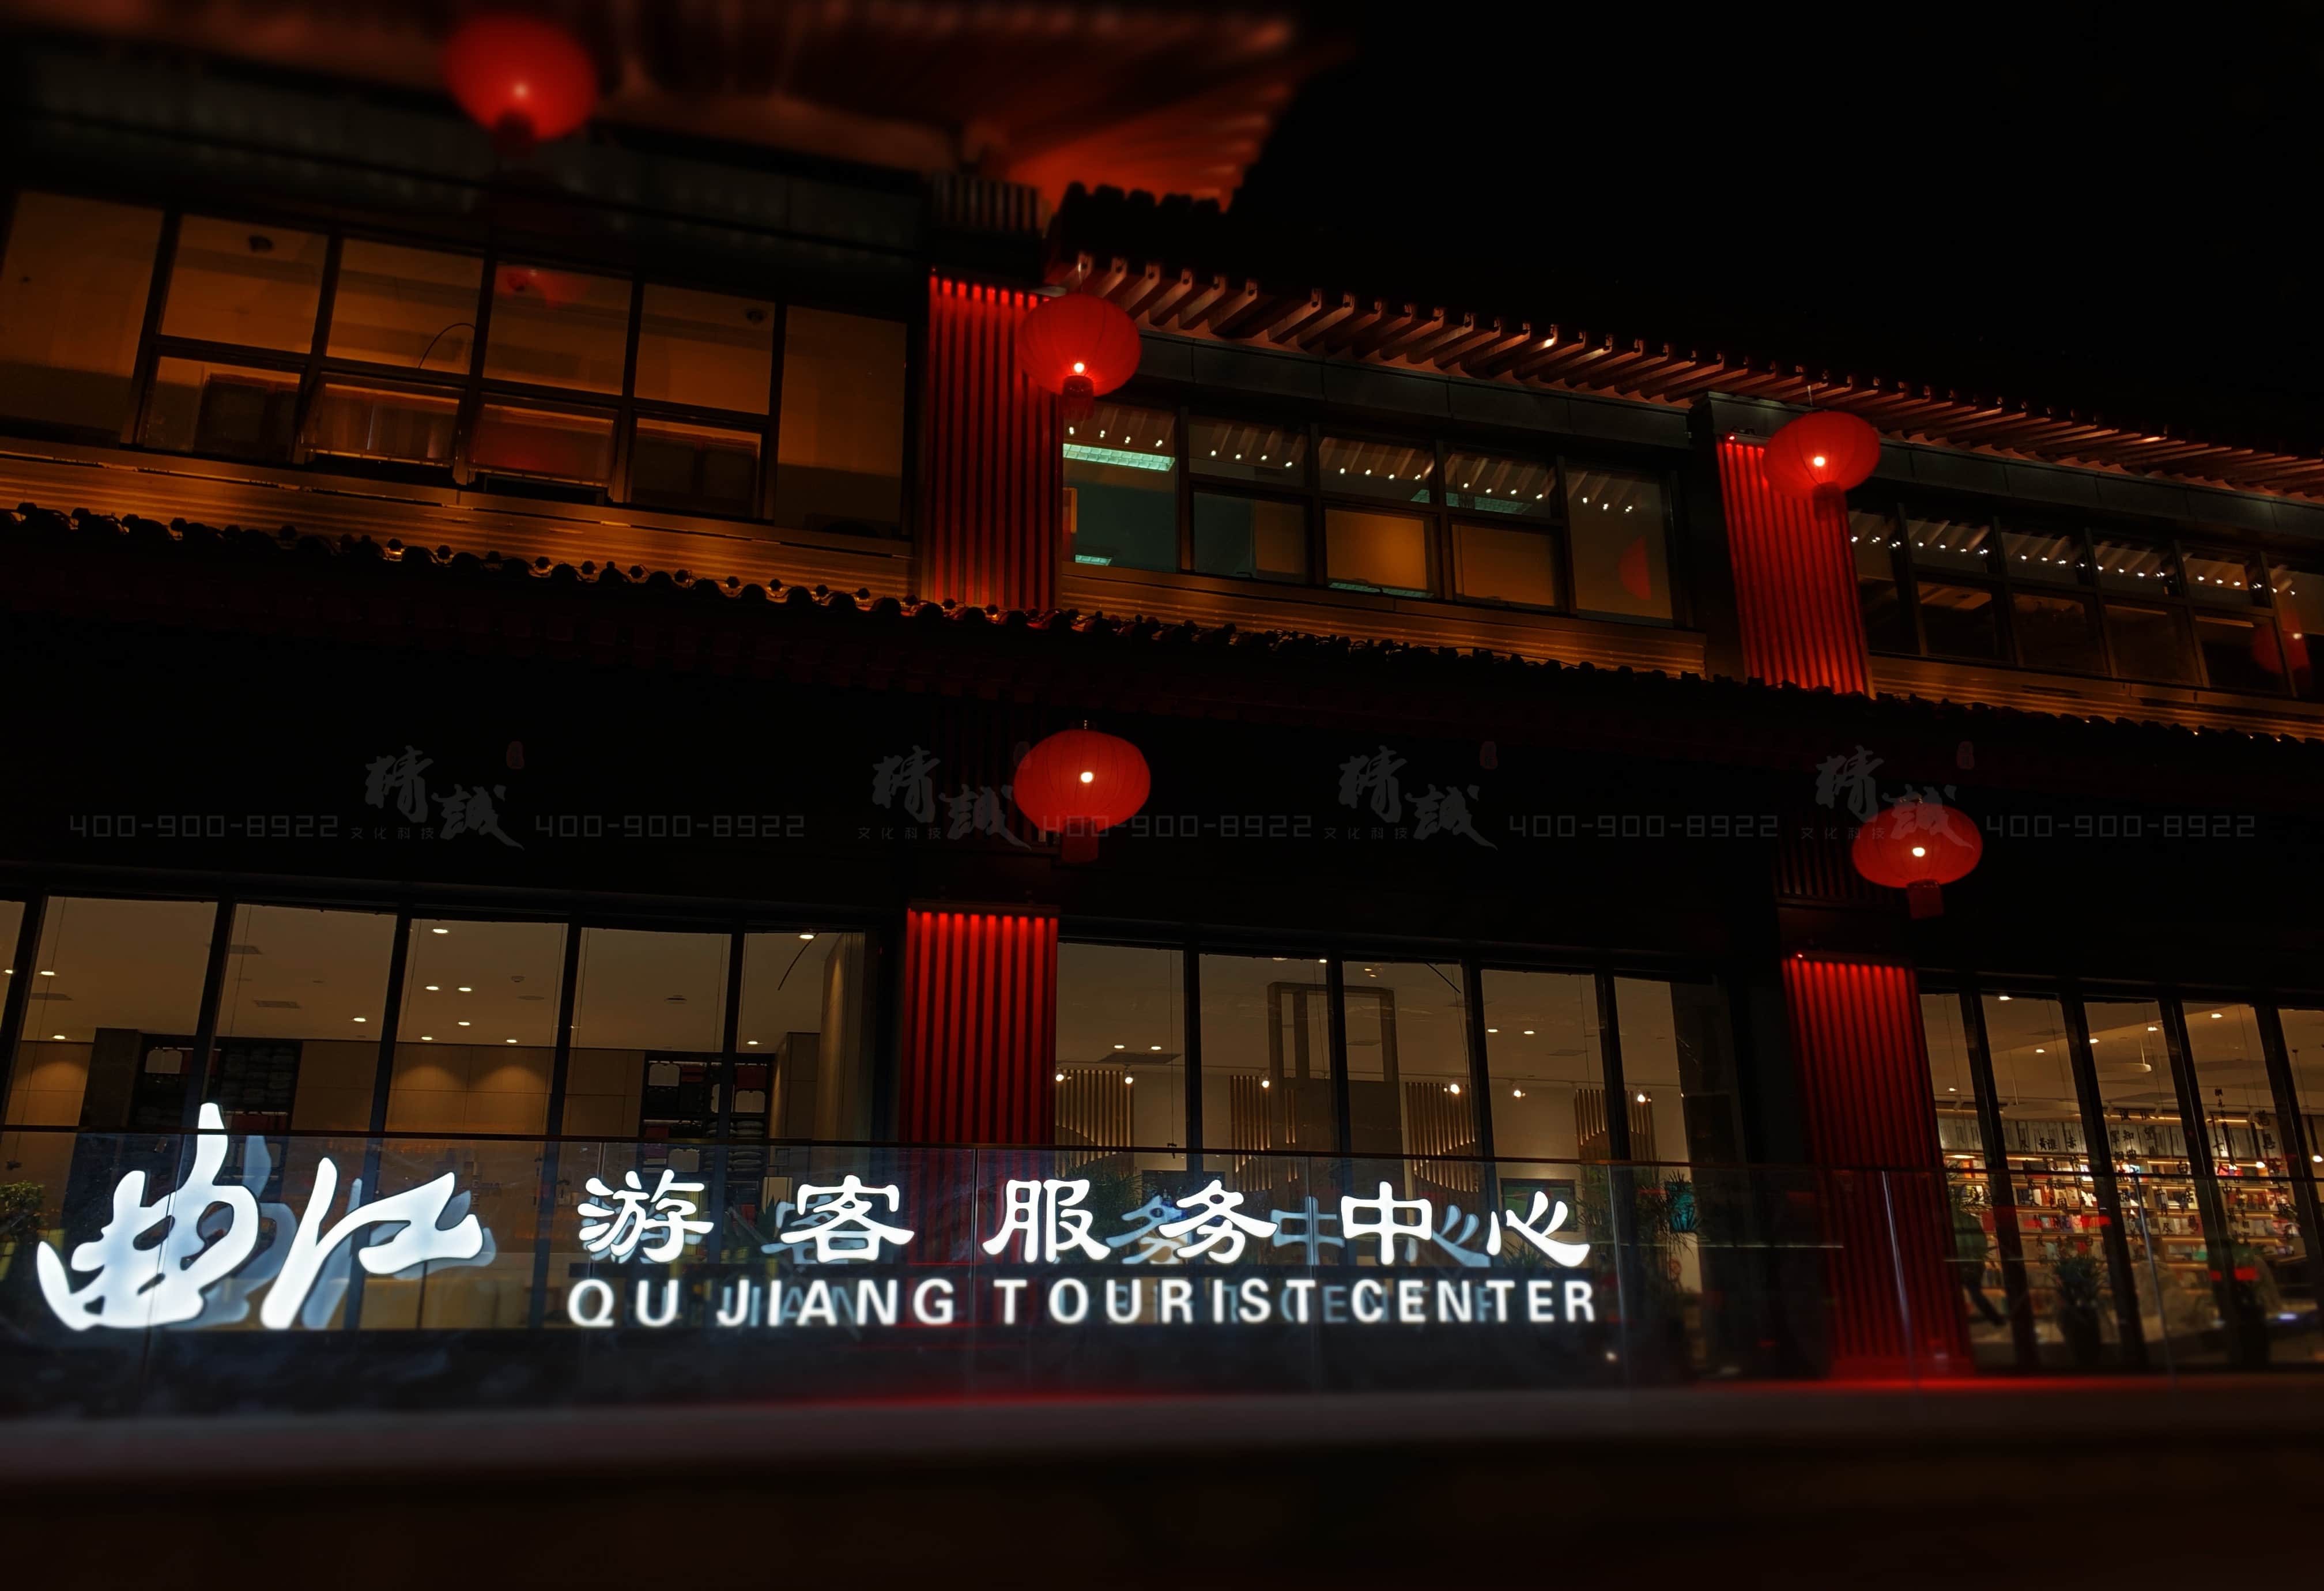 主题馆丨西安曲江游客服务中心